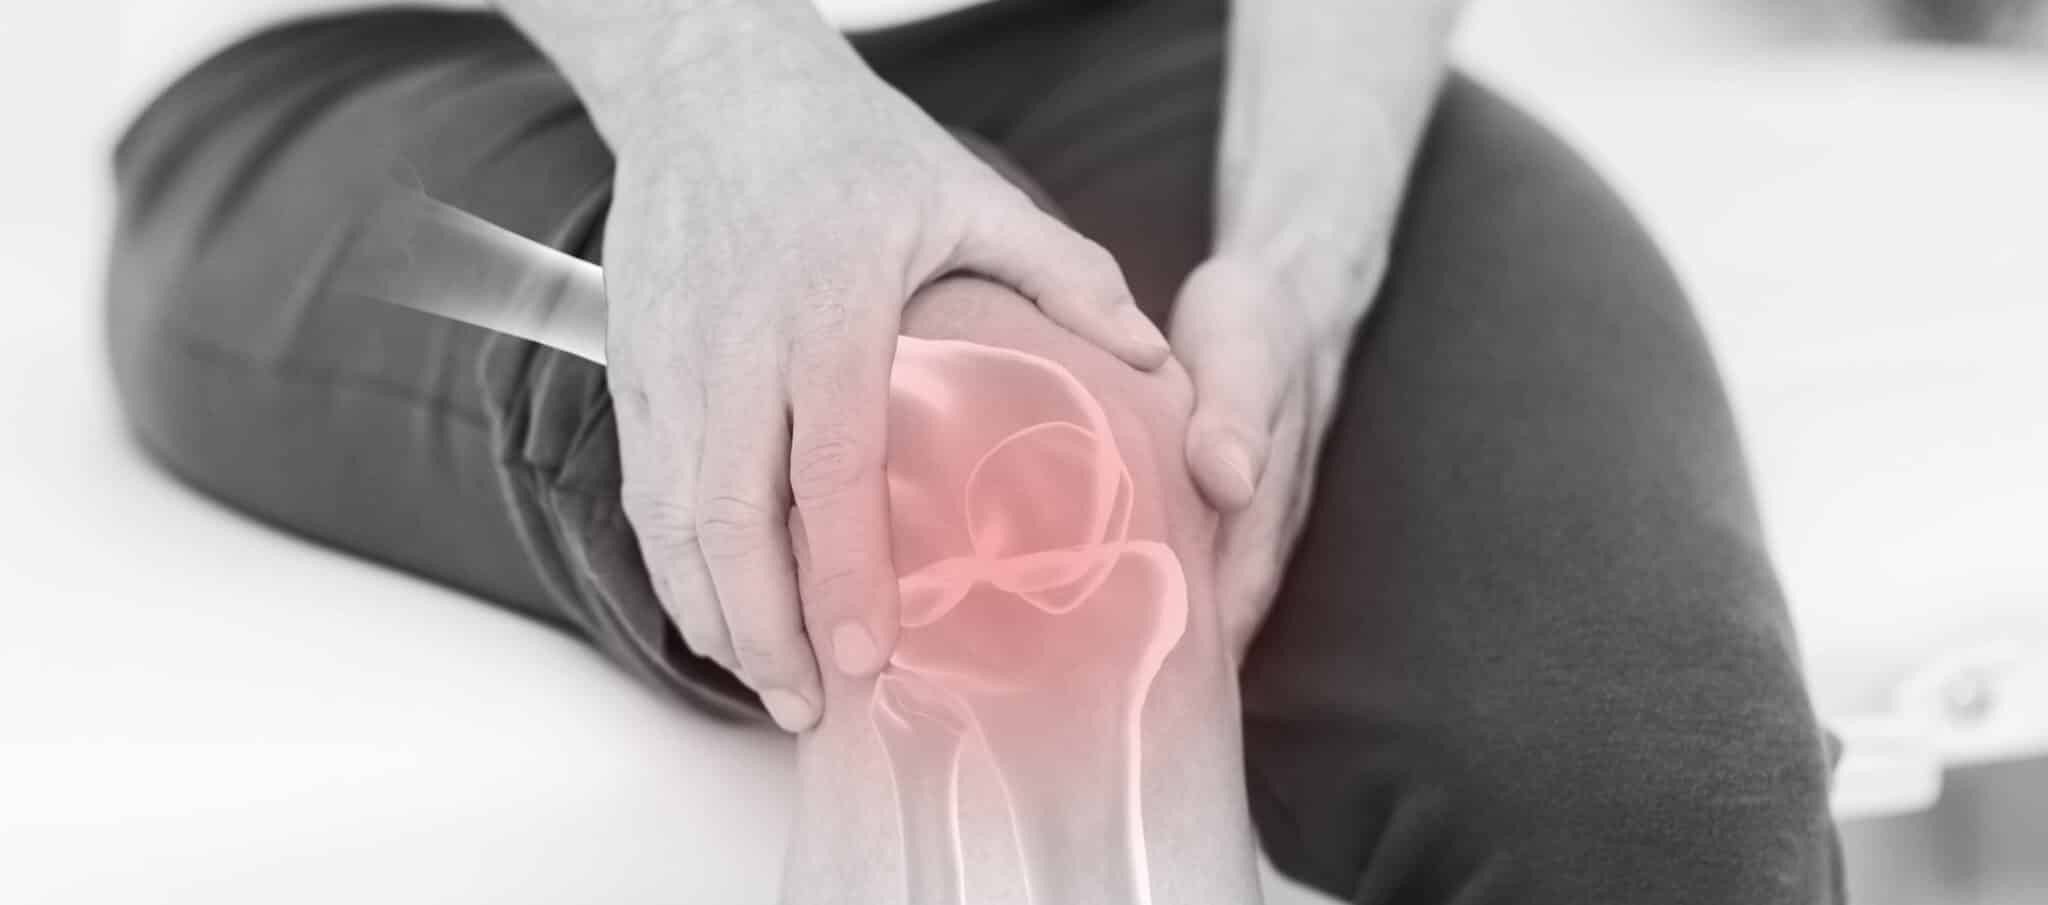 J'ai mal au genou quand je plie ma jambe : que faire ? | Dr Paillard | Paris